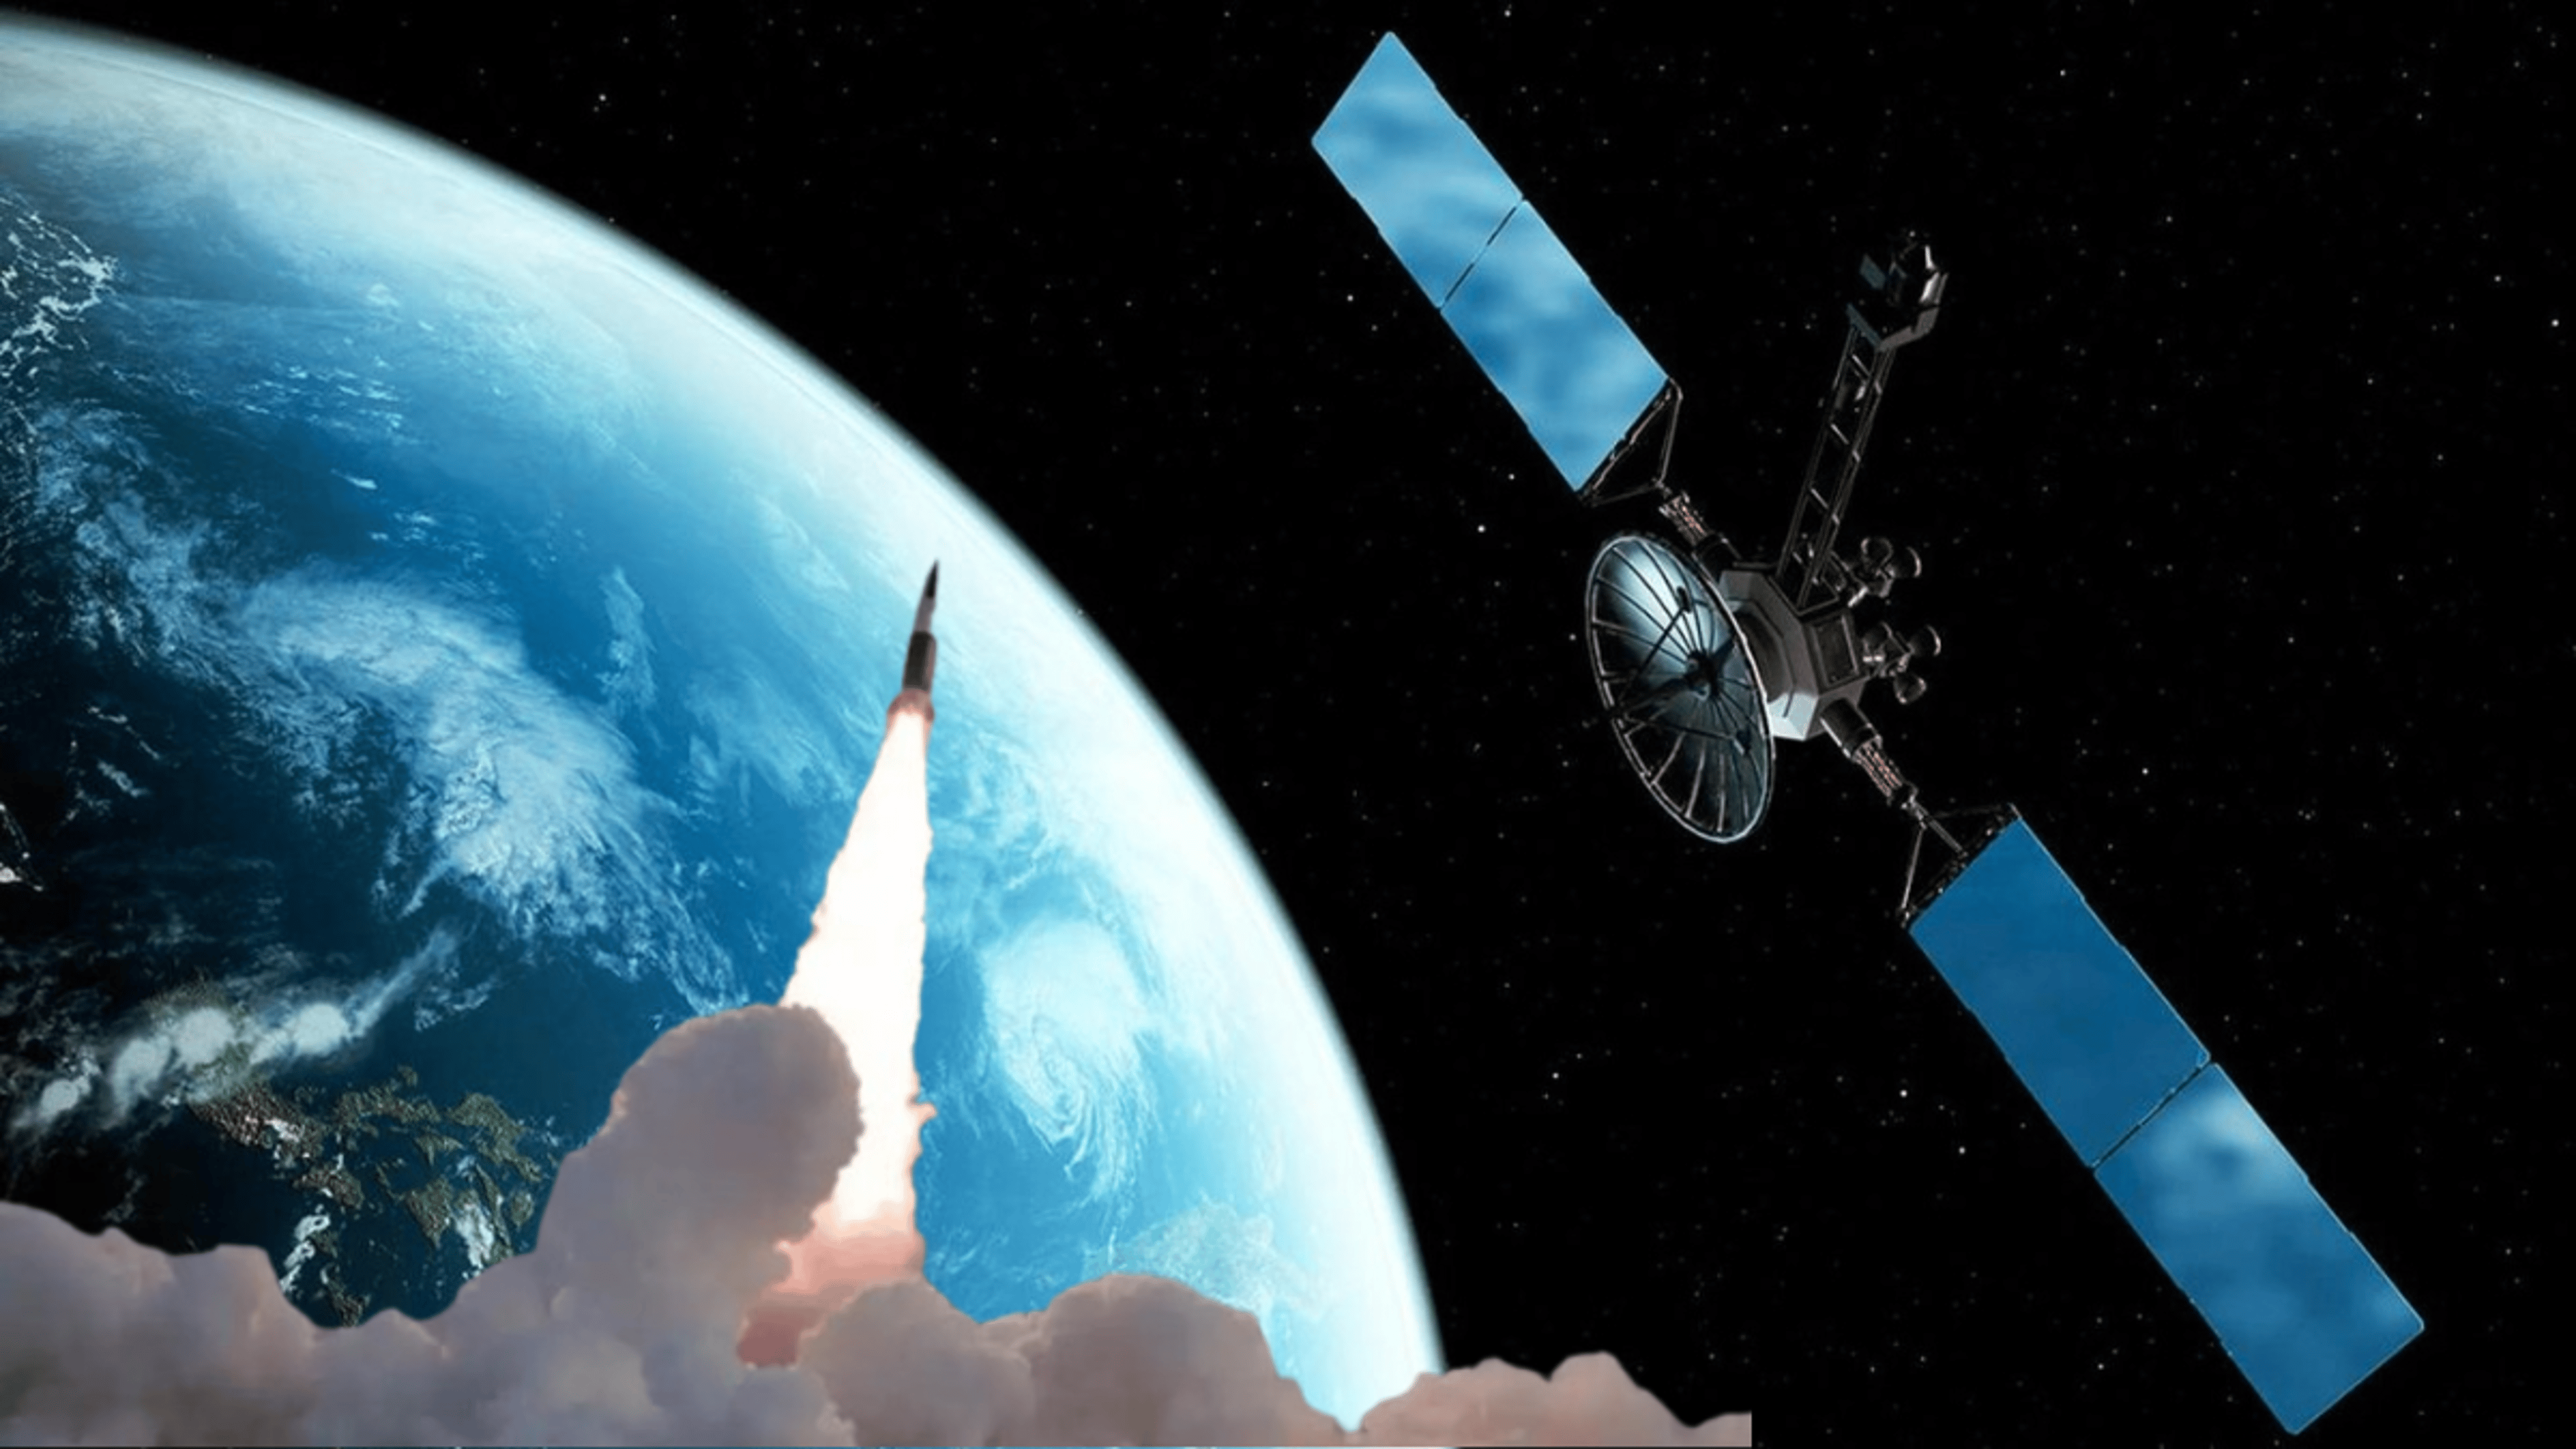 भारत का पहला सैन्य जासूसी सैटेलाइट जल्द अंतरिक्ष में, टाटा ने तैयार किया सिस्टम, मस्क की स्पेसएक्स करेगी अप्रैल में लॉन्च